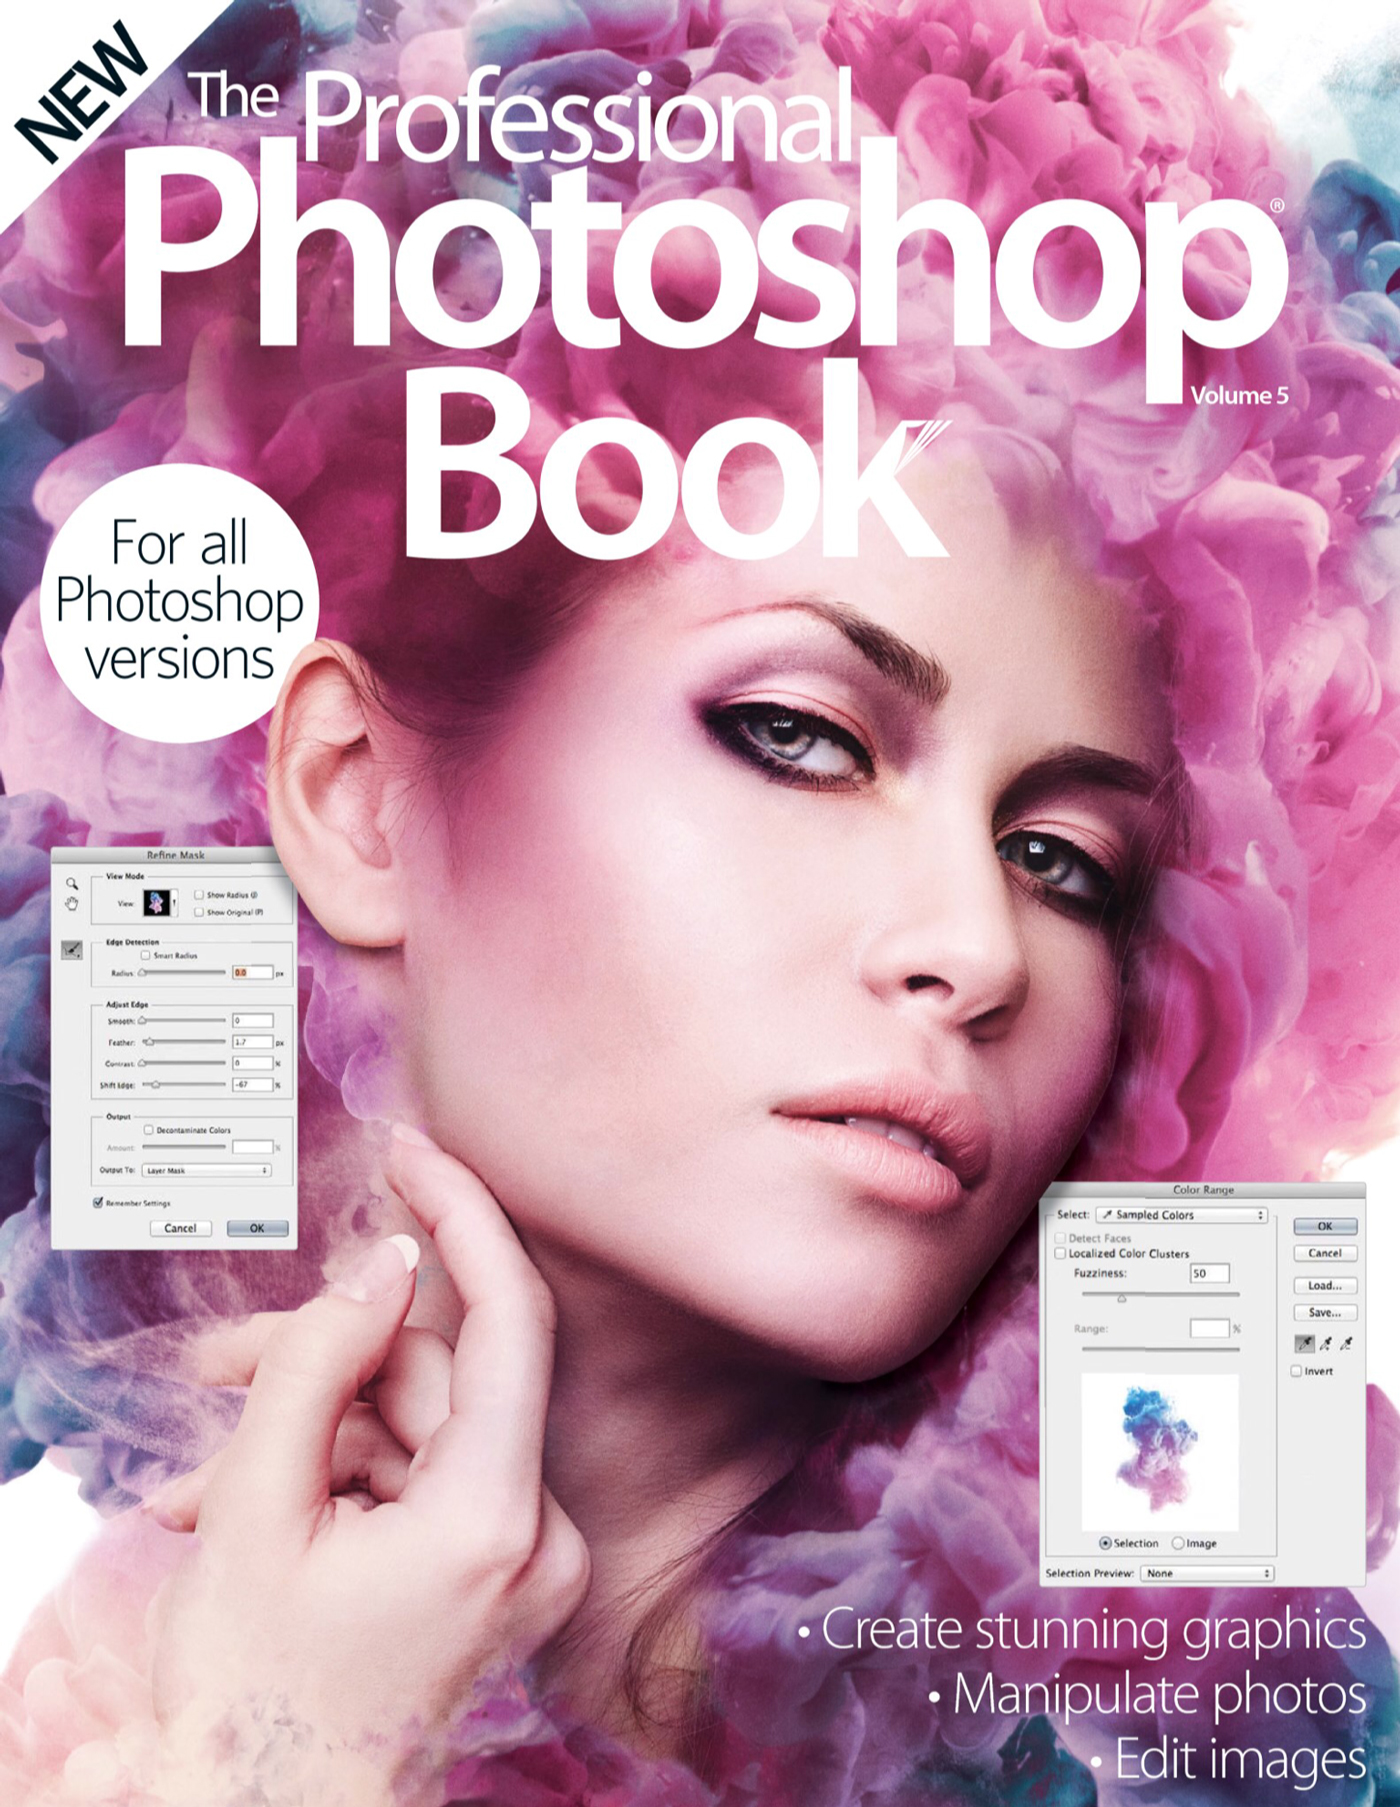 advanced photoshop drew lundquist ink cloud color vibrant beauty model